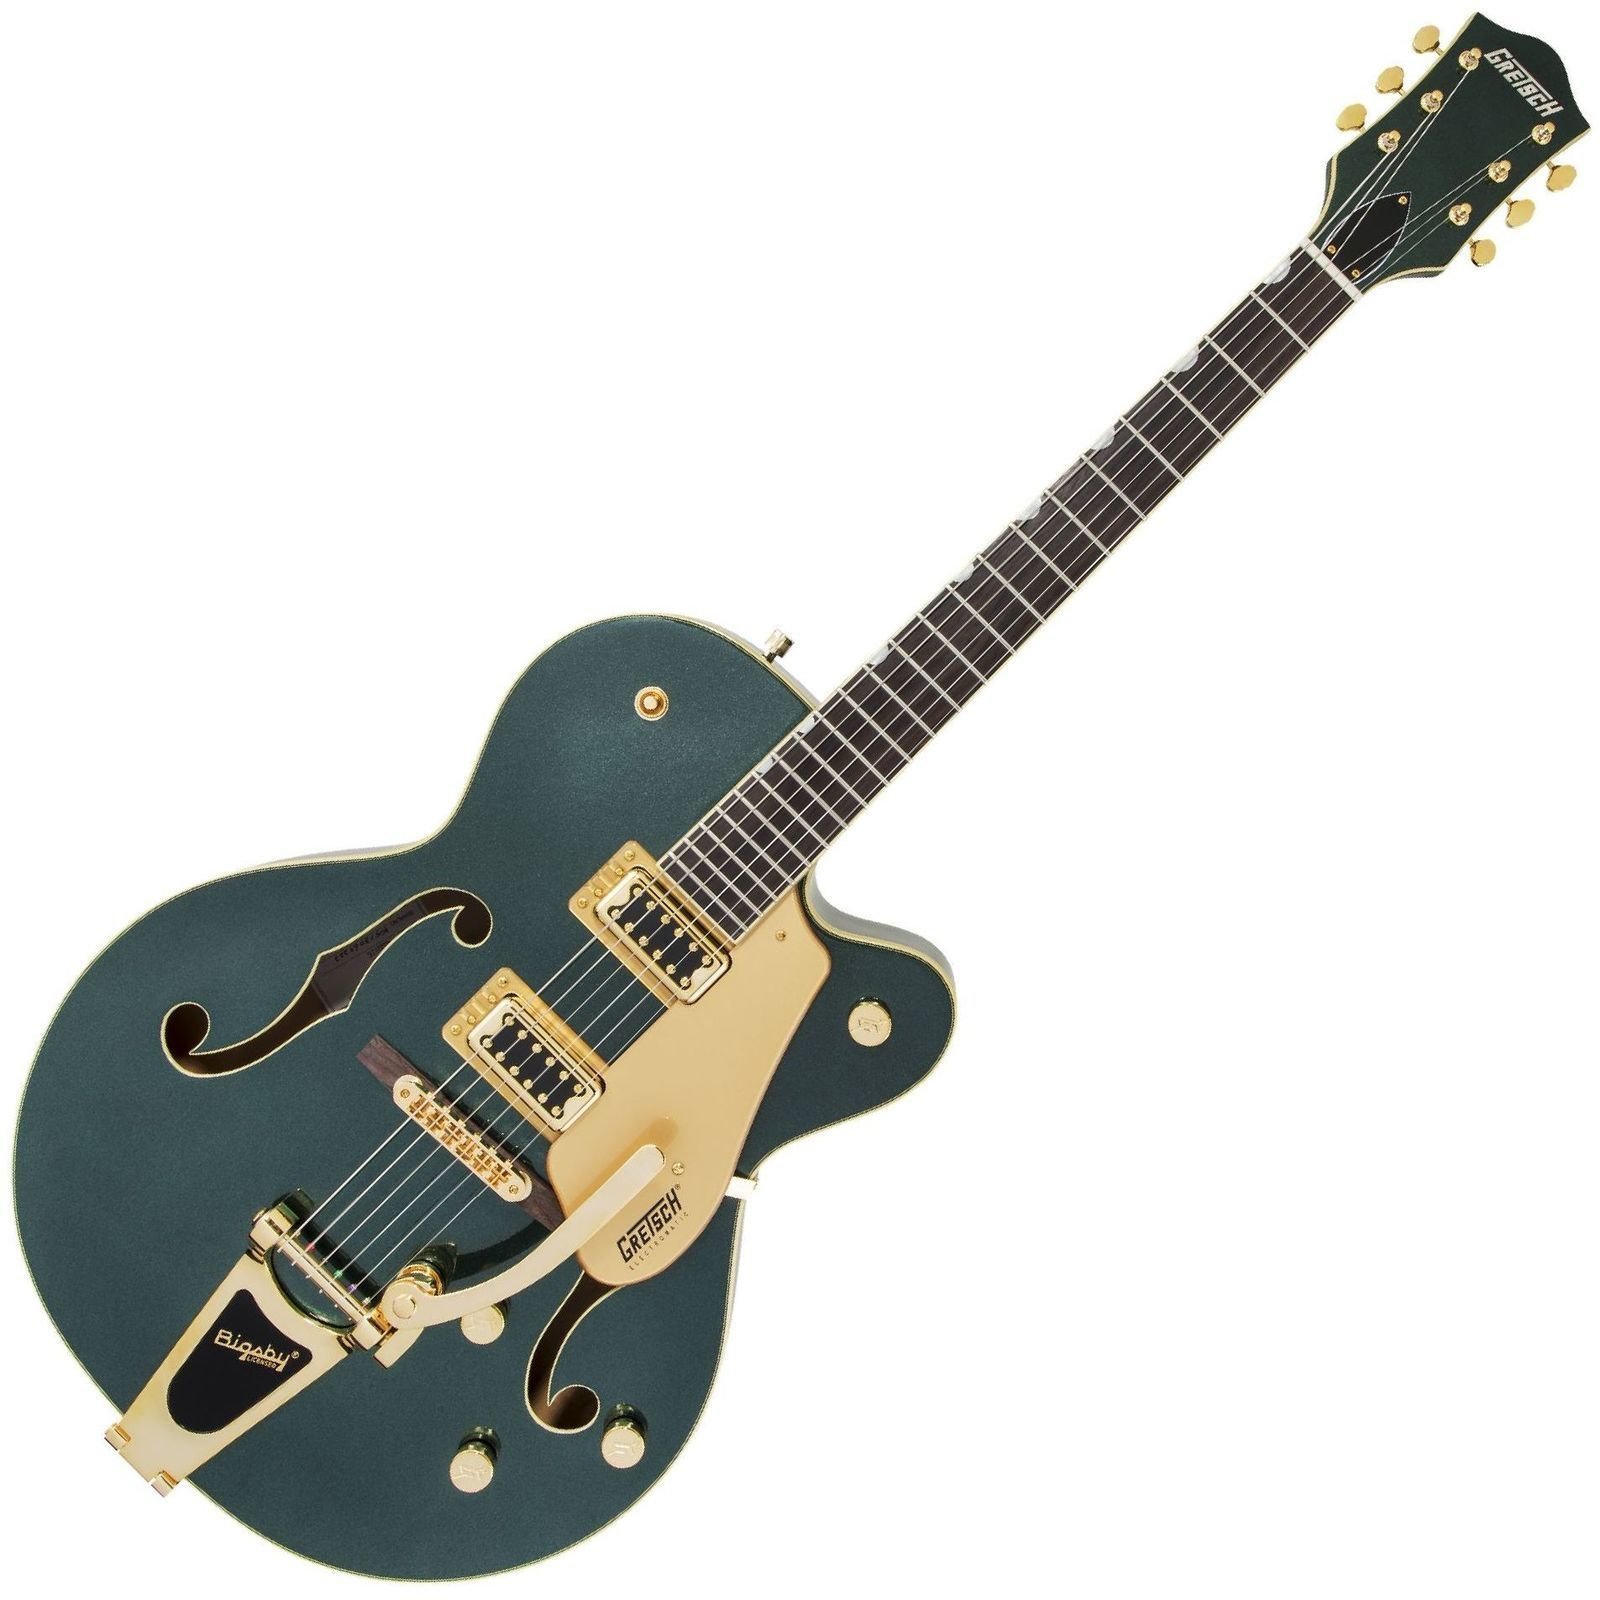 Semiakustická kytara Gretsch G5420TG Limited Edition Electromatic RW Cadillac Green